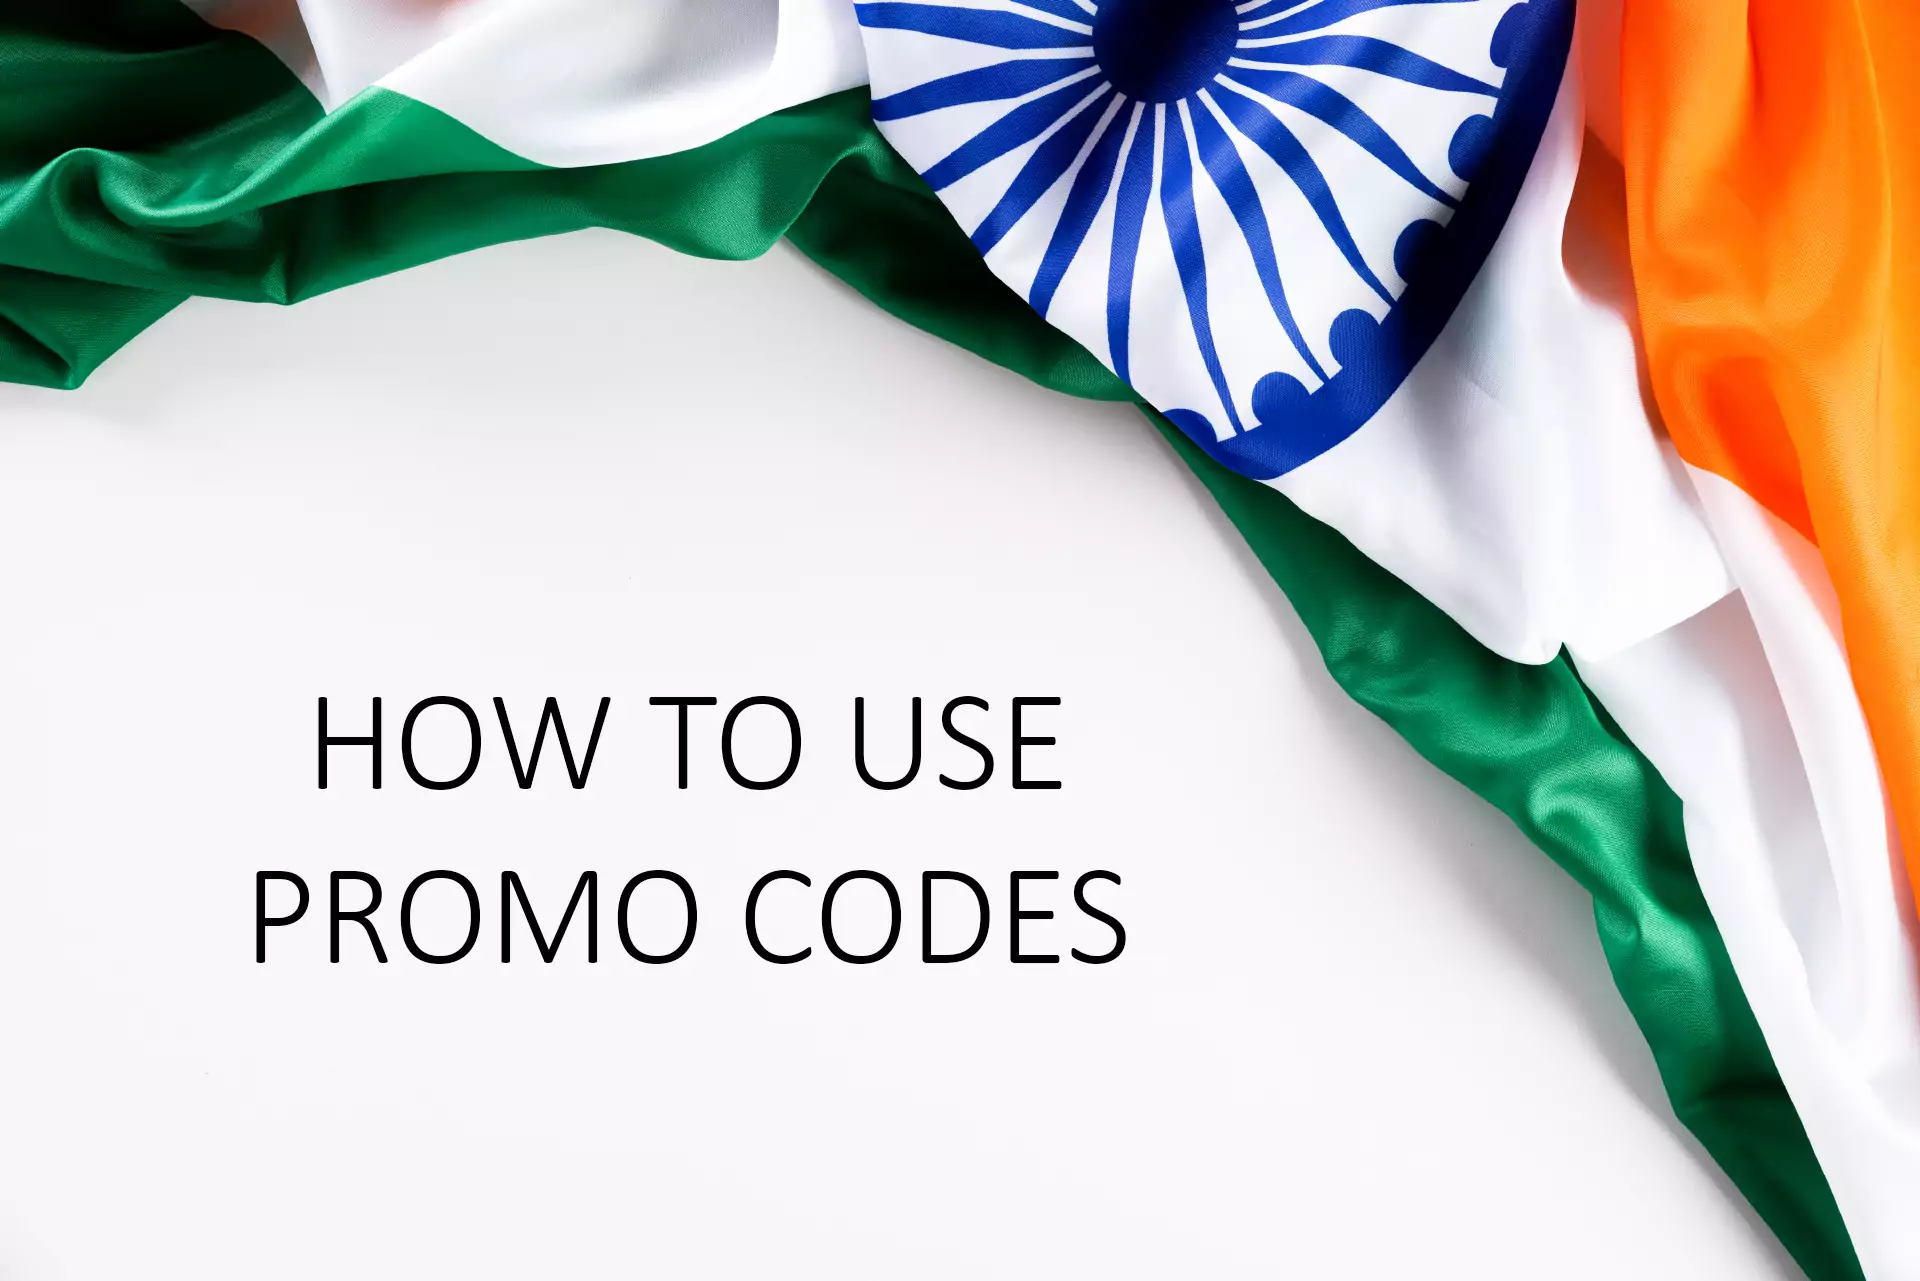 भारत से खेलने वाले प्रोमो कोड का उपयोग करने के लिए आपको साइट चुननी होगी और पंजीकरण करना होगा।